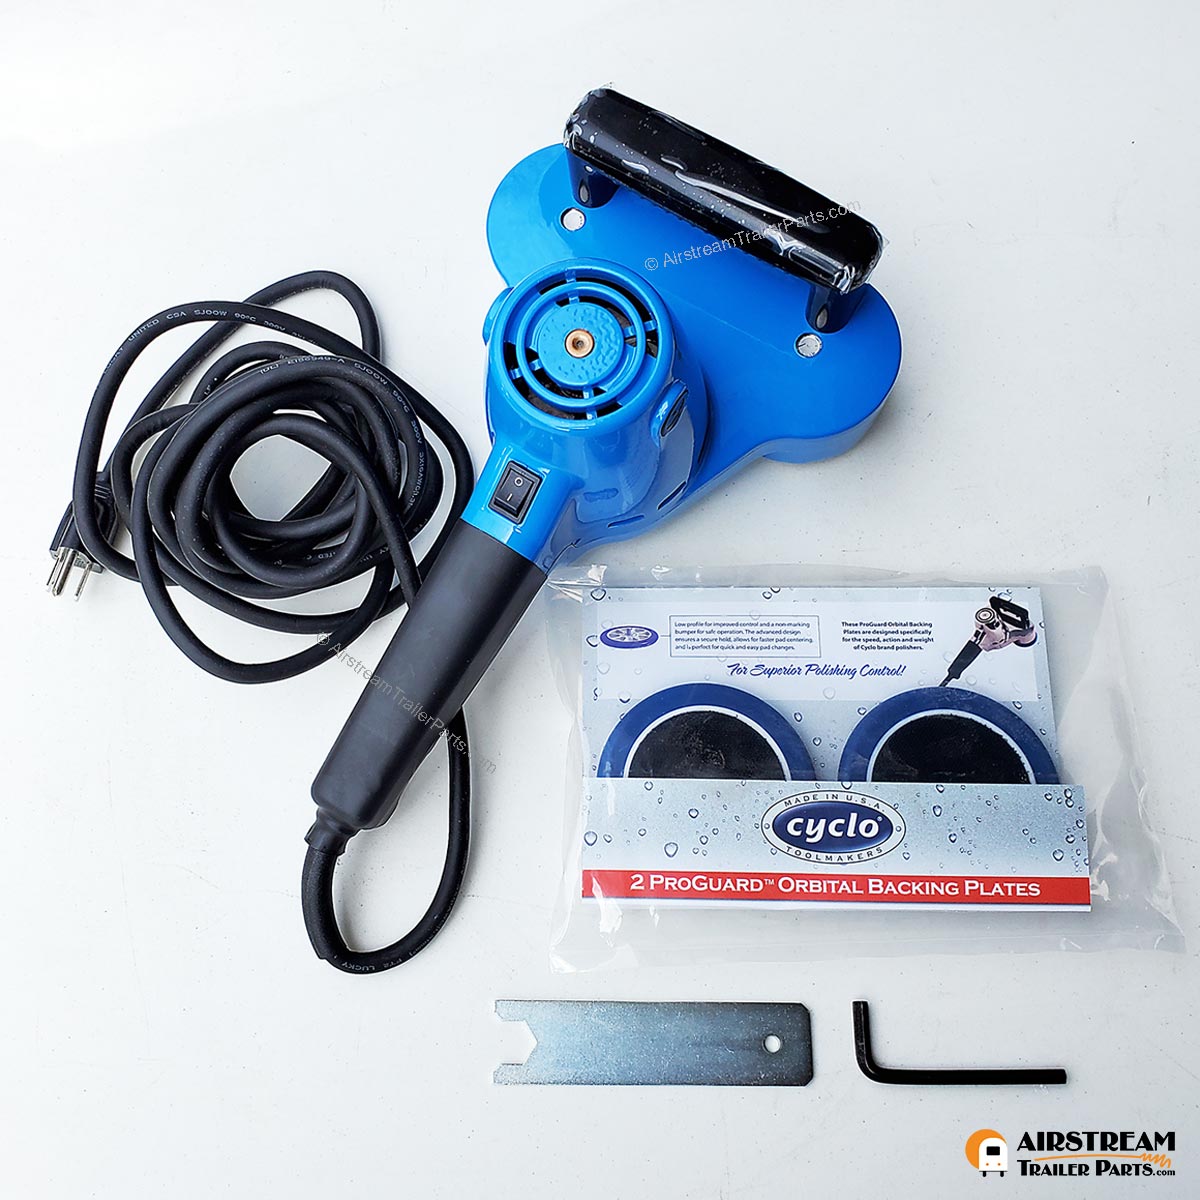 Cyclo Intro Kit, Cyclo orbital polisher, car polisher, cyclo